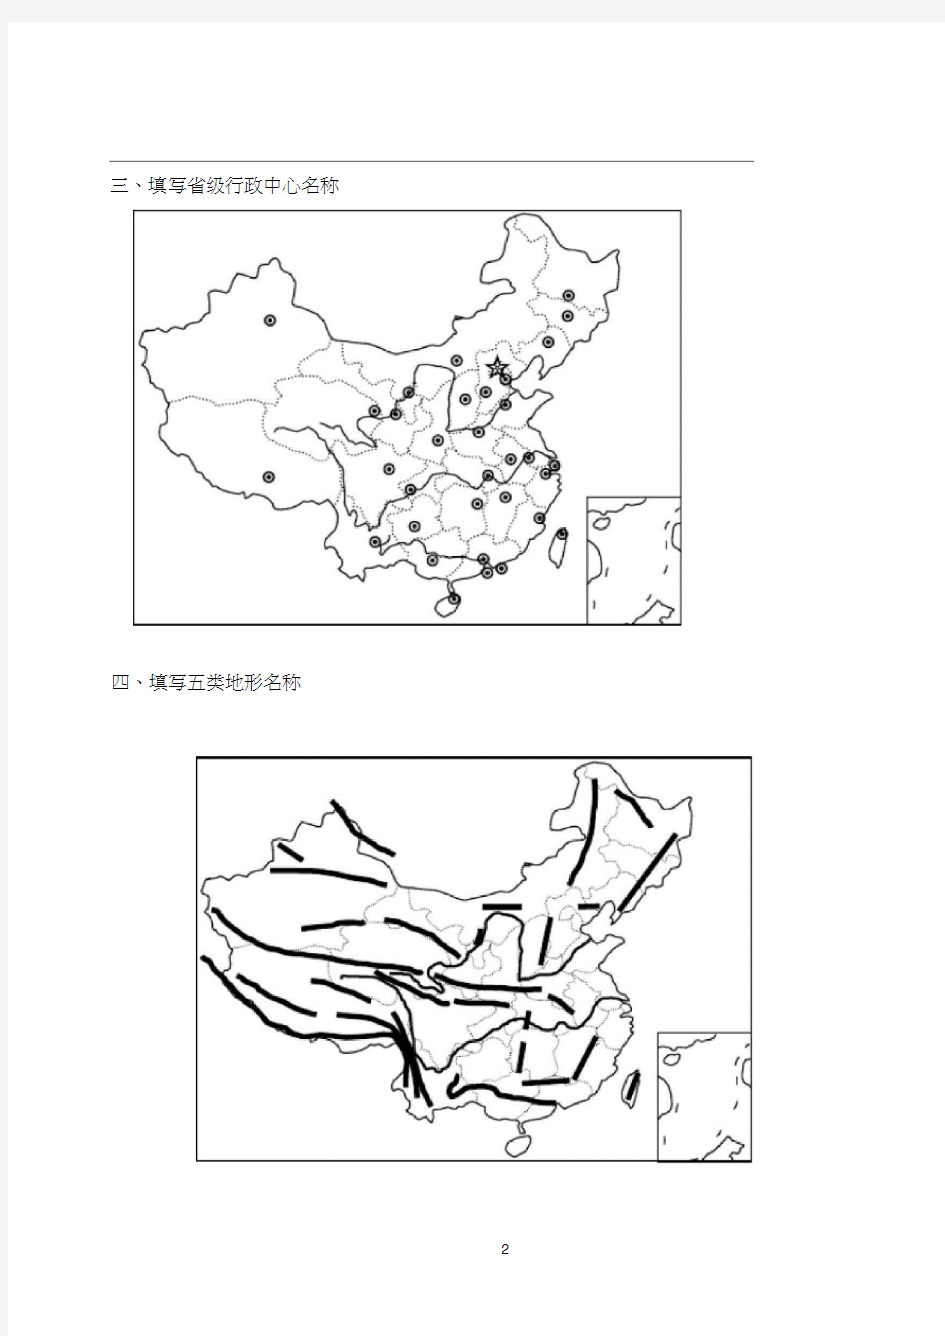 中国地理填图练习题